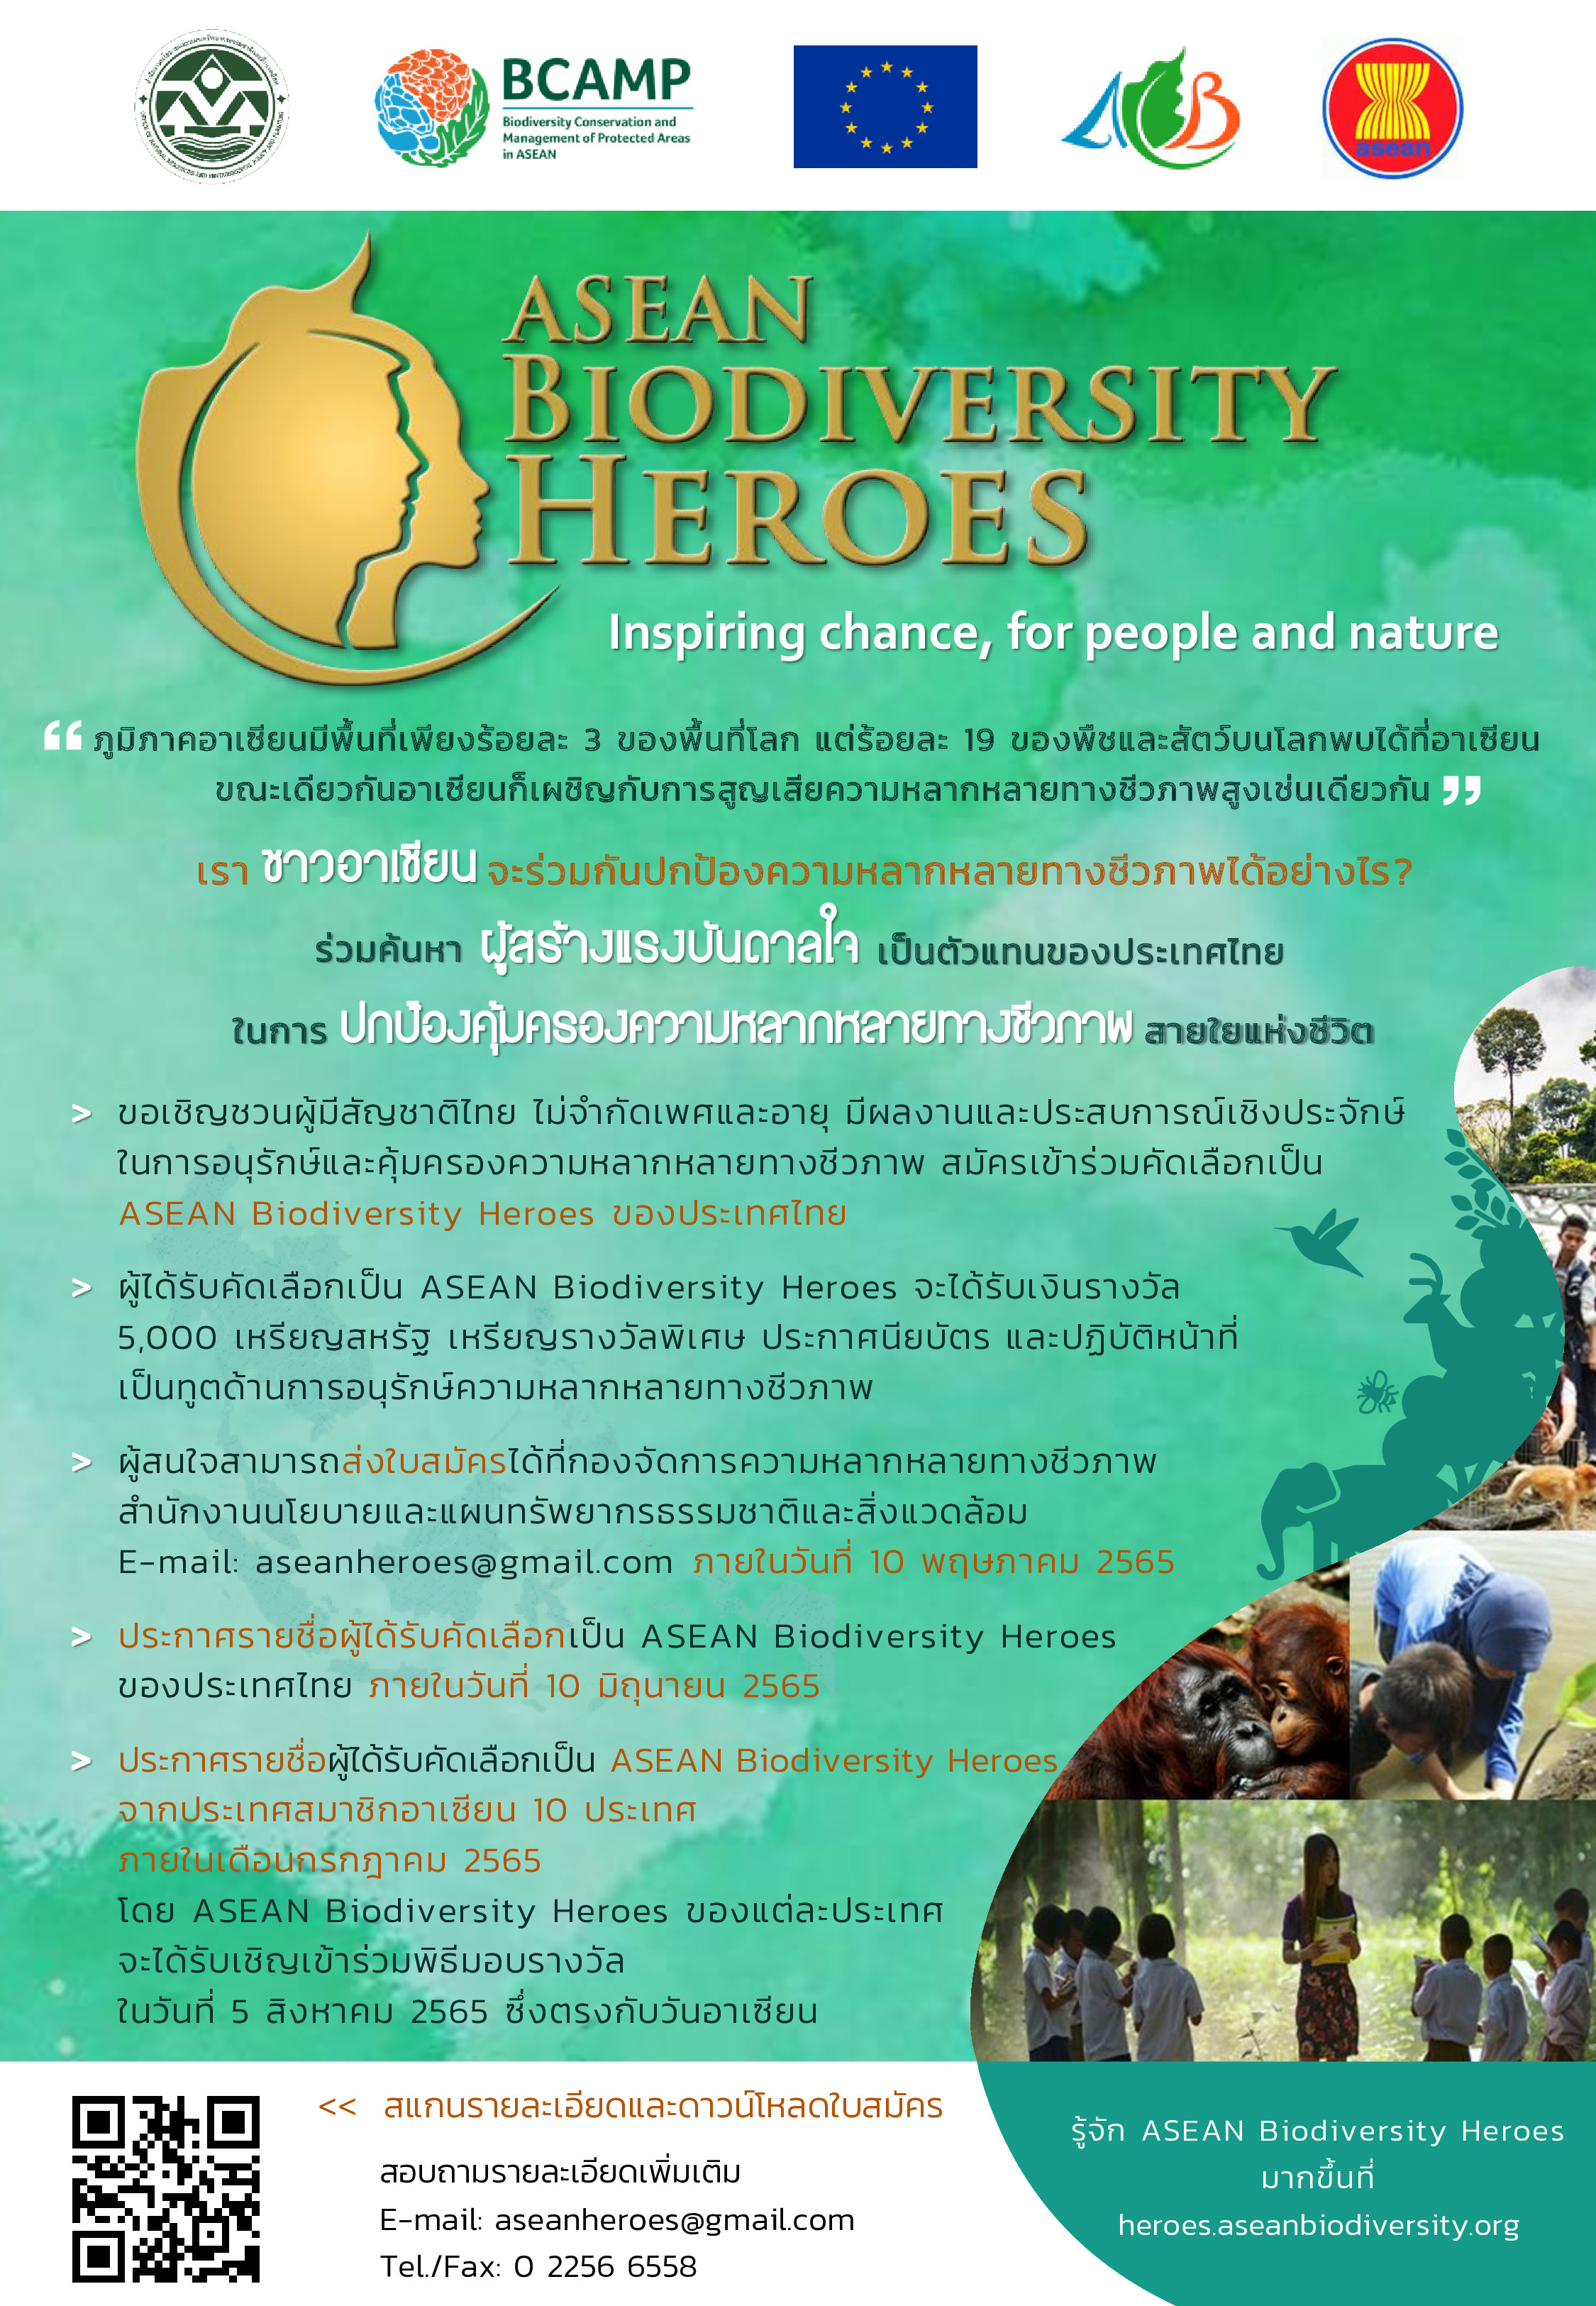 ขอเชิญเสนอชื่อบุคคลเพื่อคัดเลือกเป็น ASEAN Biodiversity Heroes ประเทศไทย